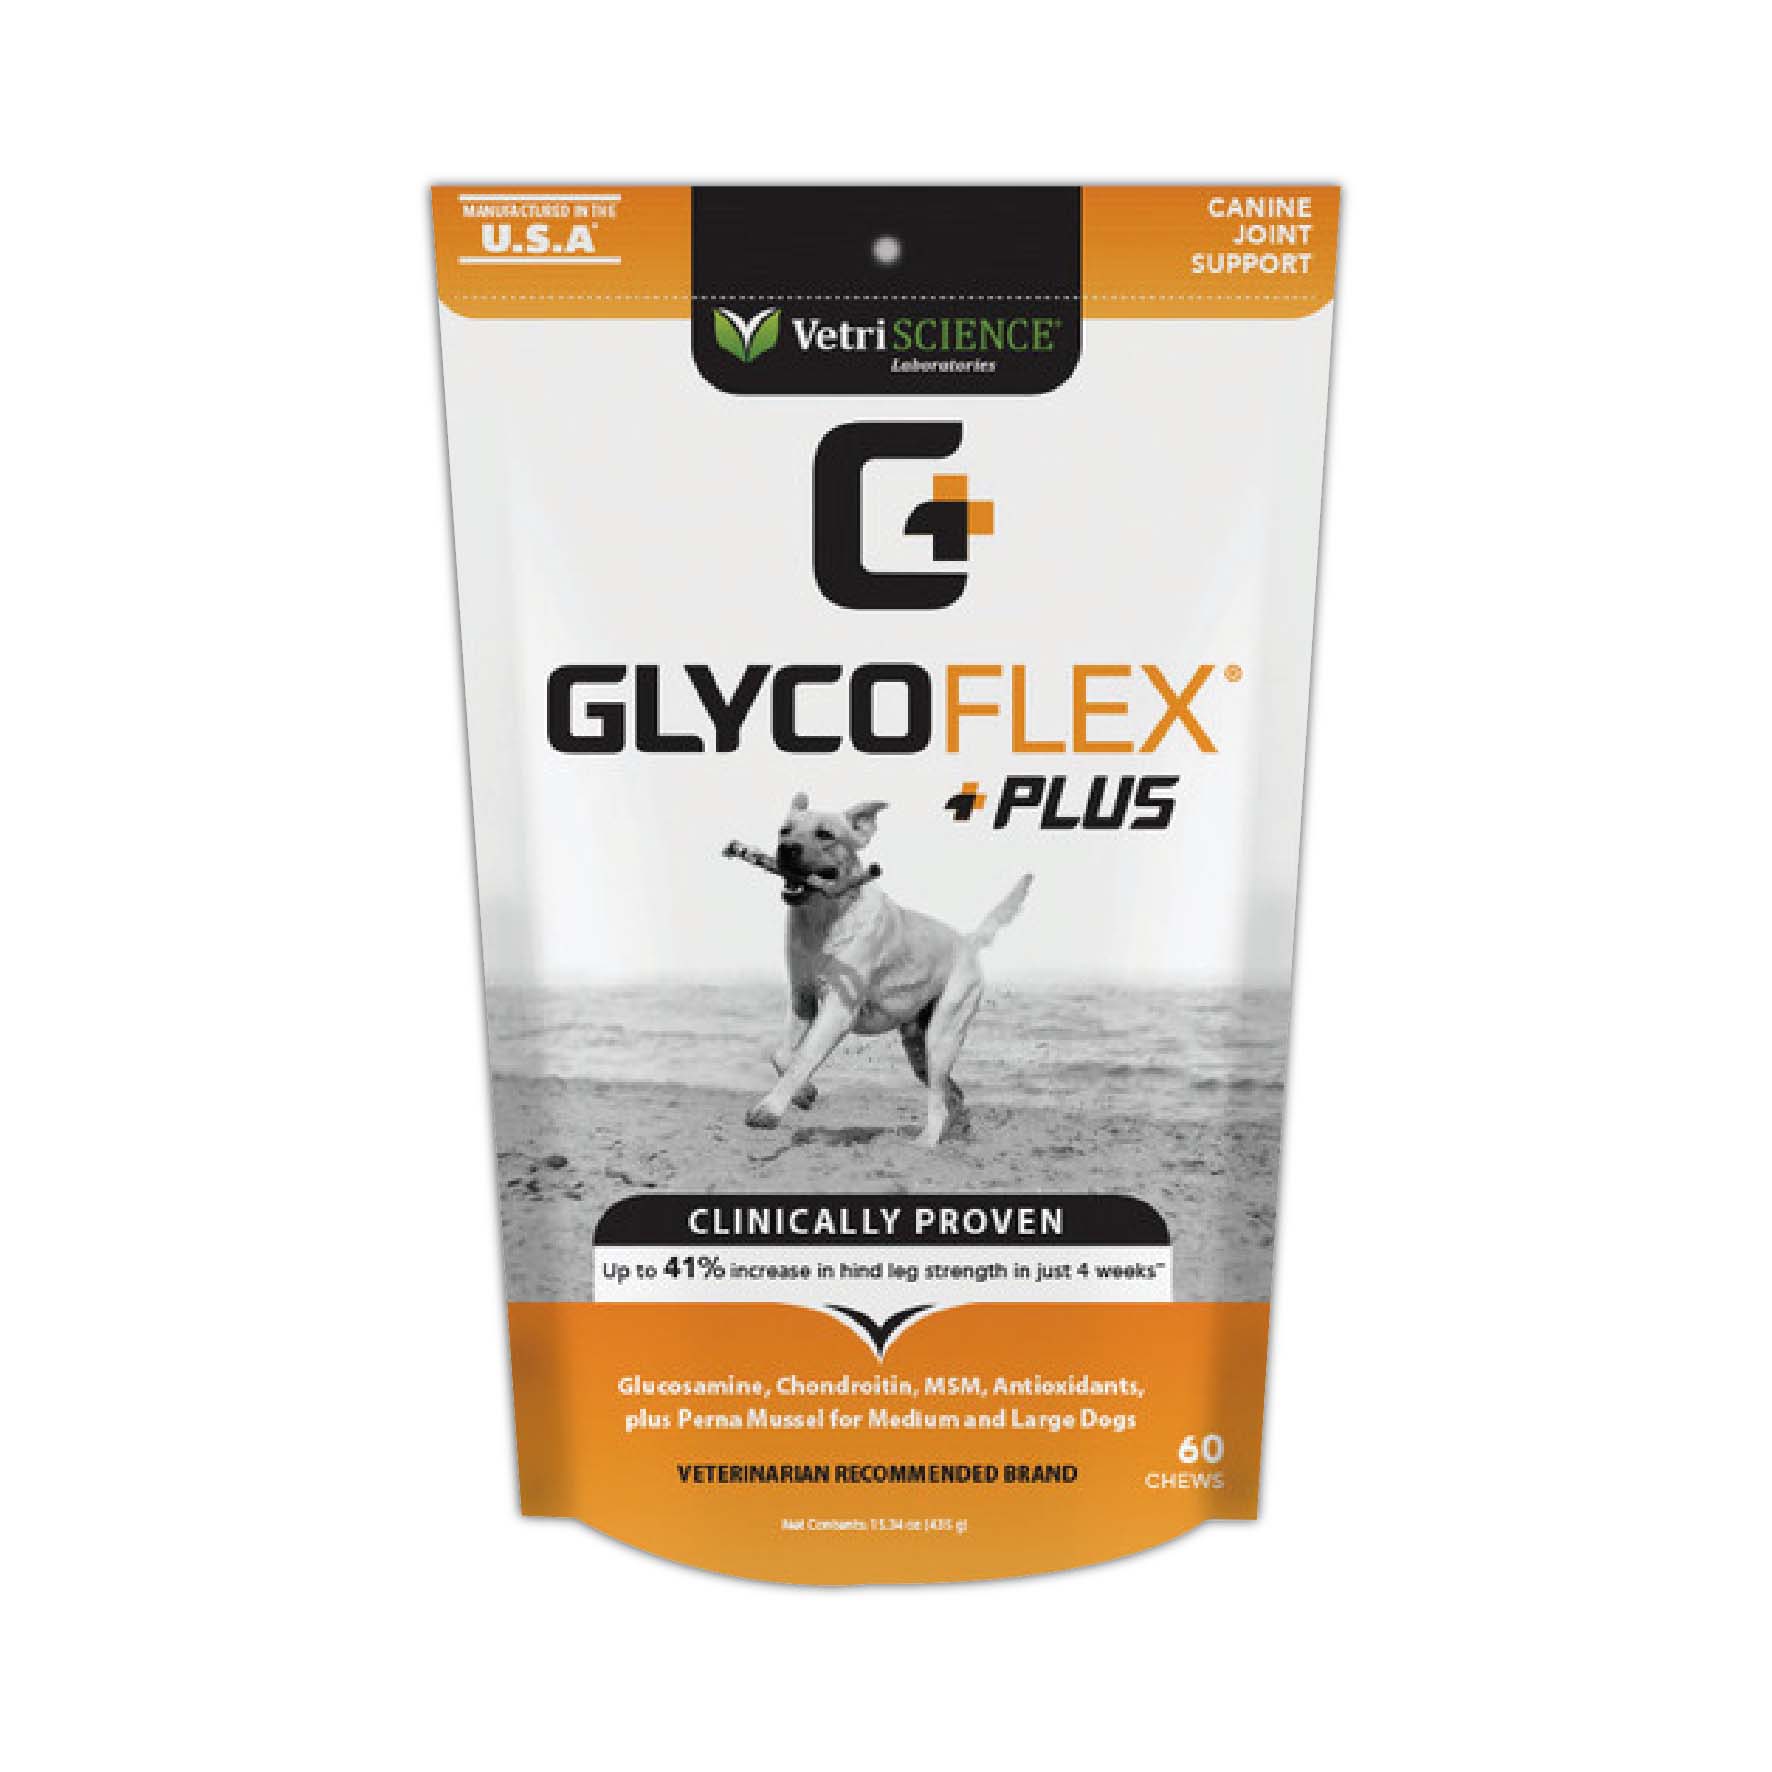 維多麗 關節保健嚼錠 (大型犬)
Vetriscience Glyco Flex Plus Dogs >18kg